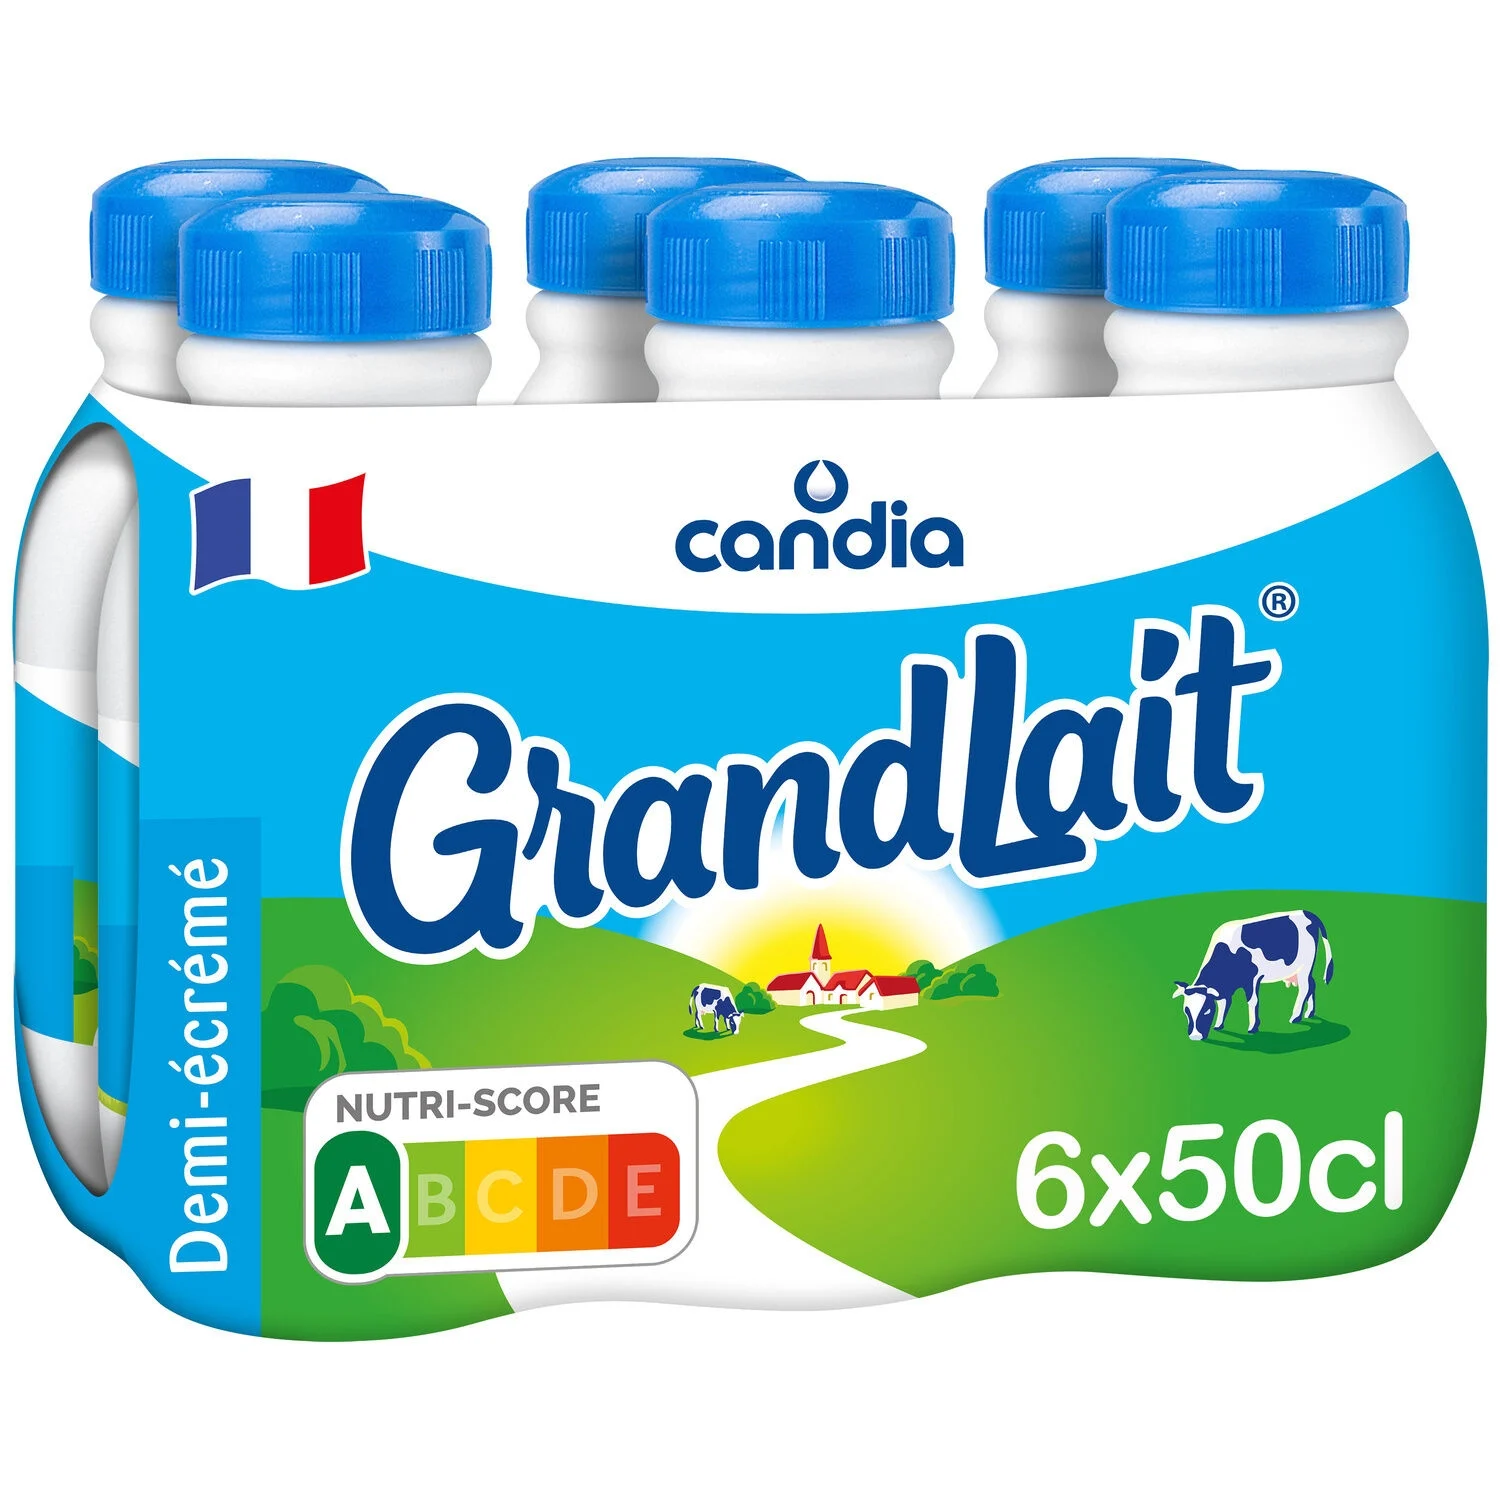 Grandlait セミスキムミルク 6x50cl - カンディア